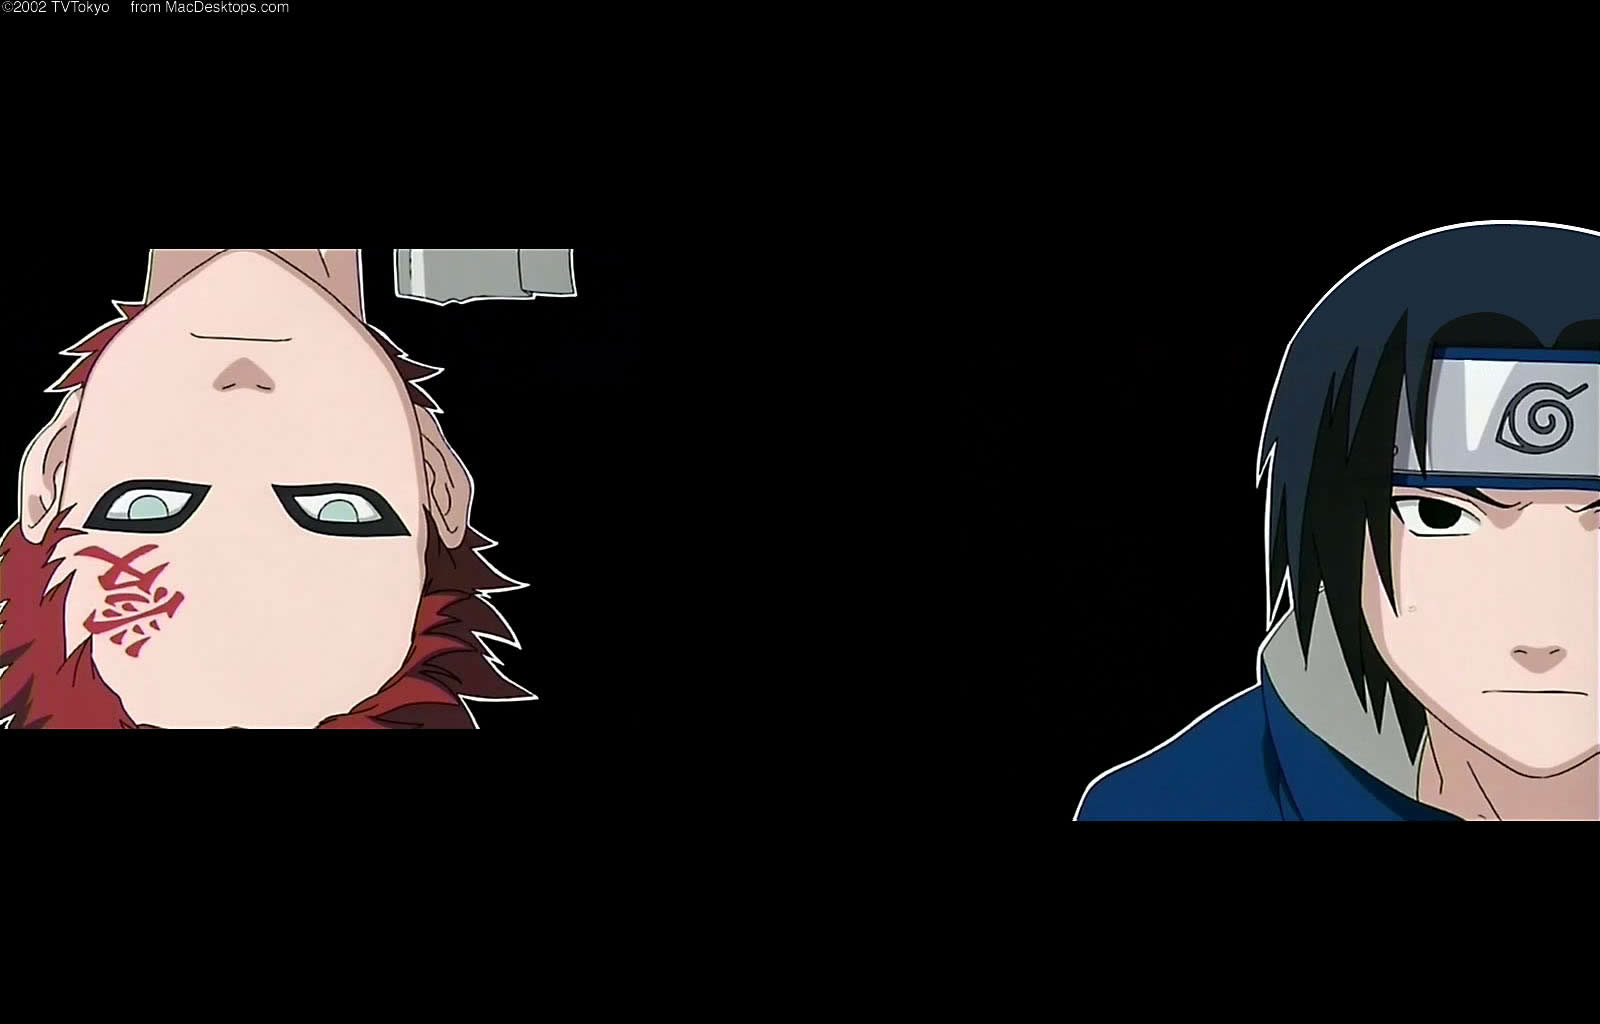 wallpaper - anime - naruto - gaara and sasuke - 1600x1024.jpg